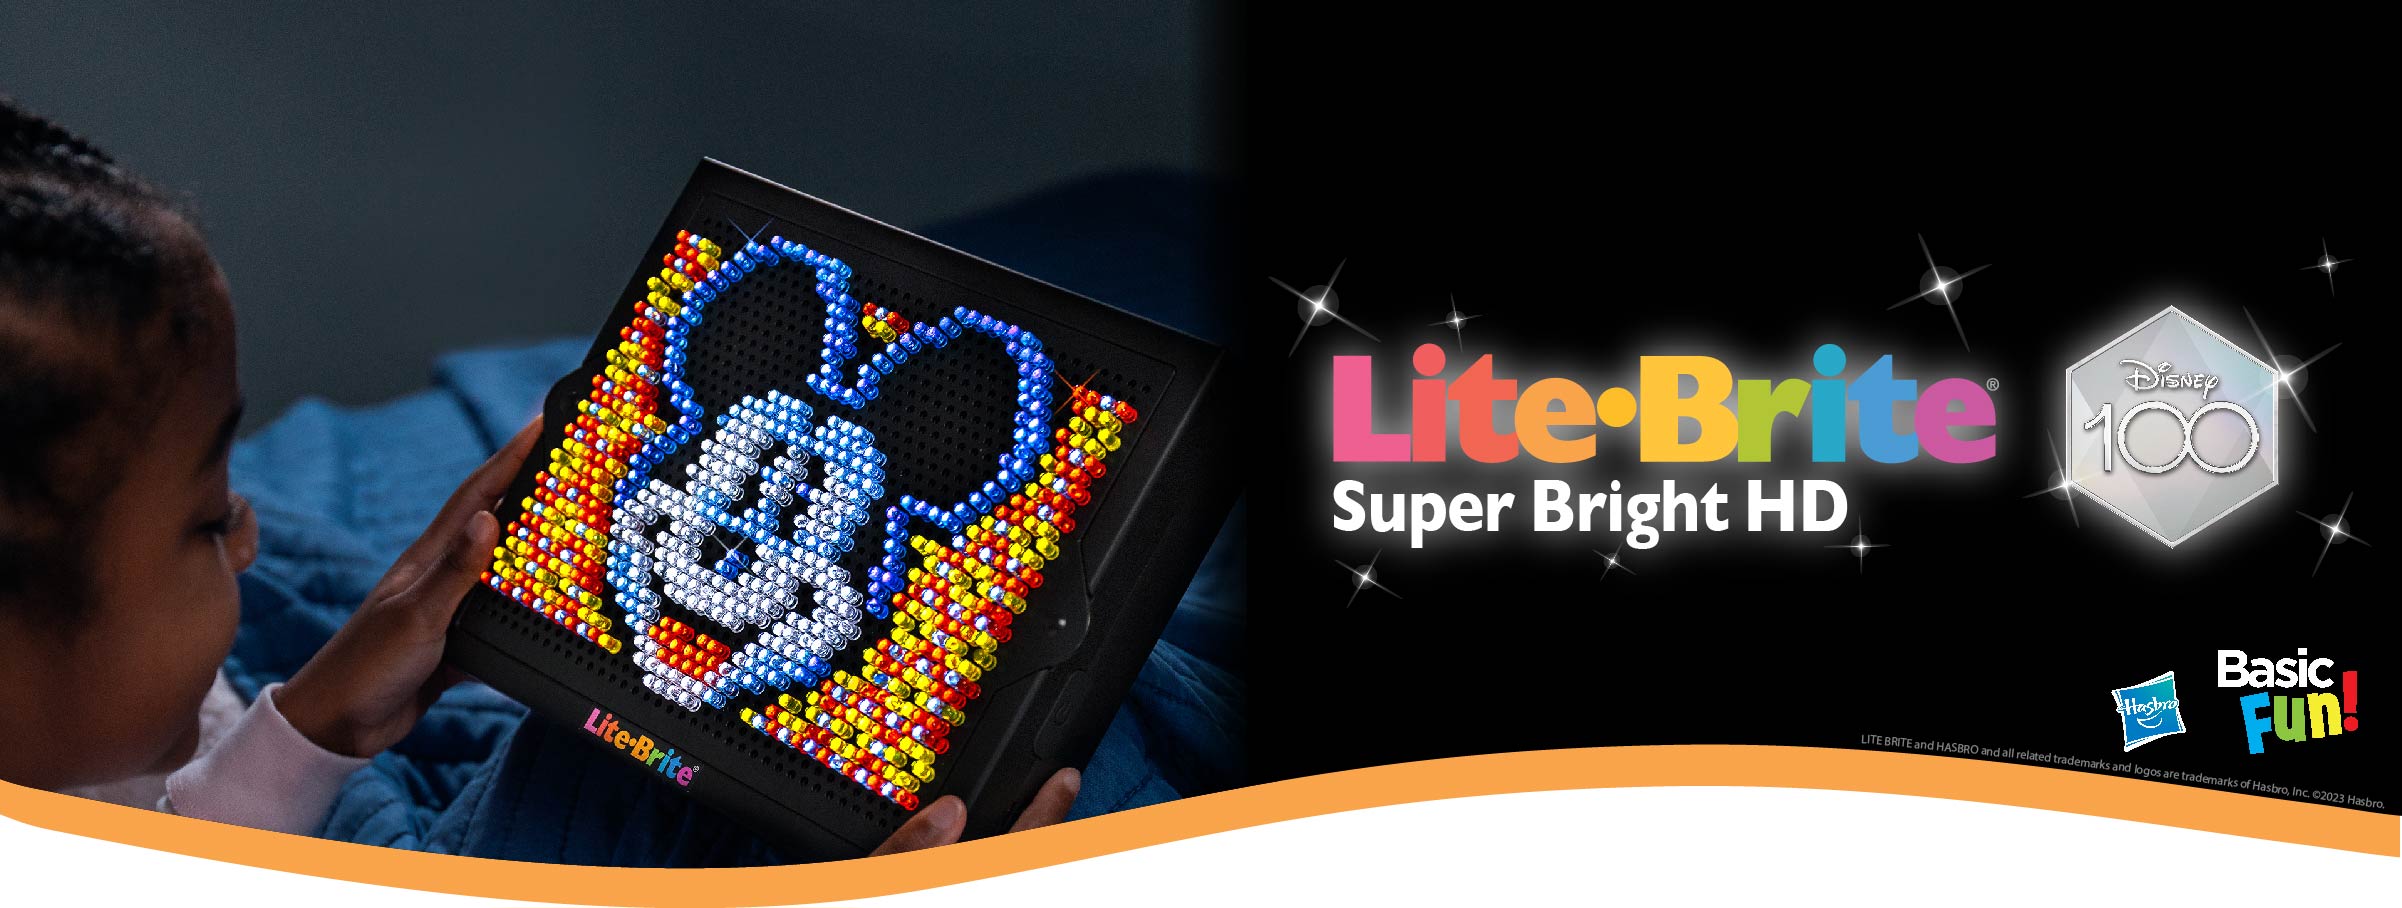 Lite Brite Super Bright Disney 100 banner